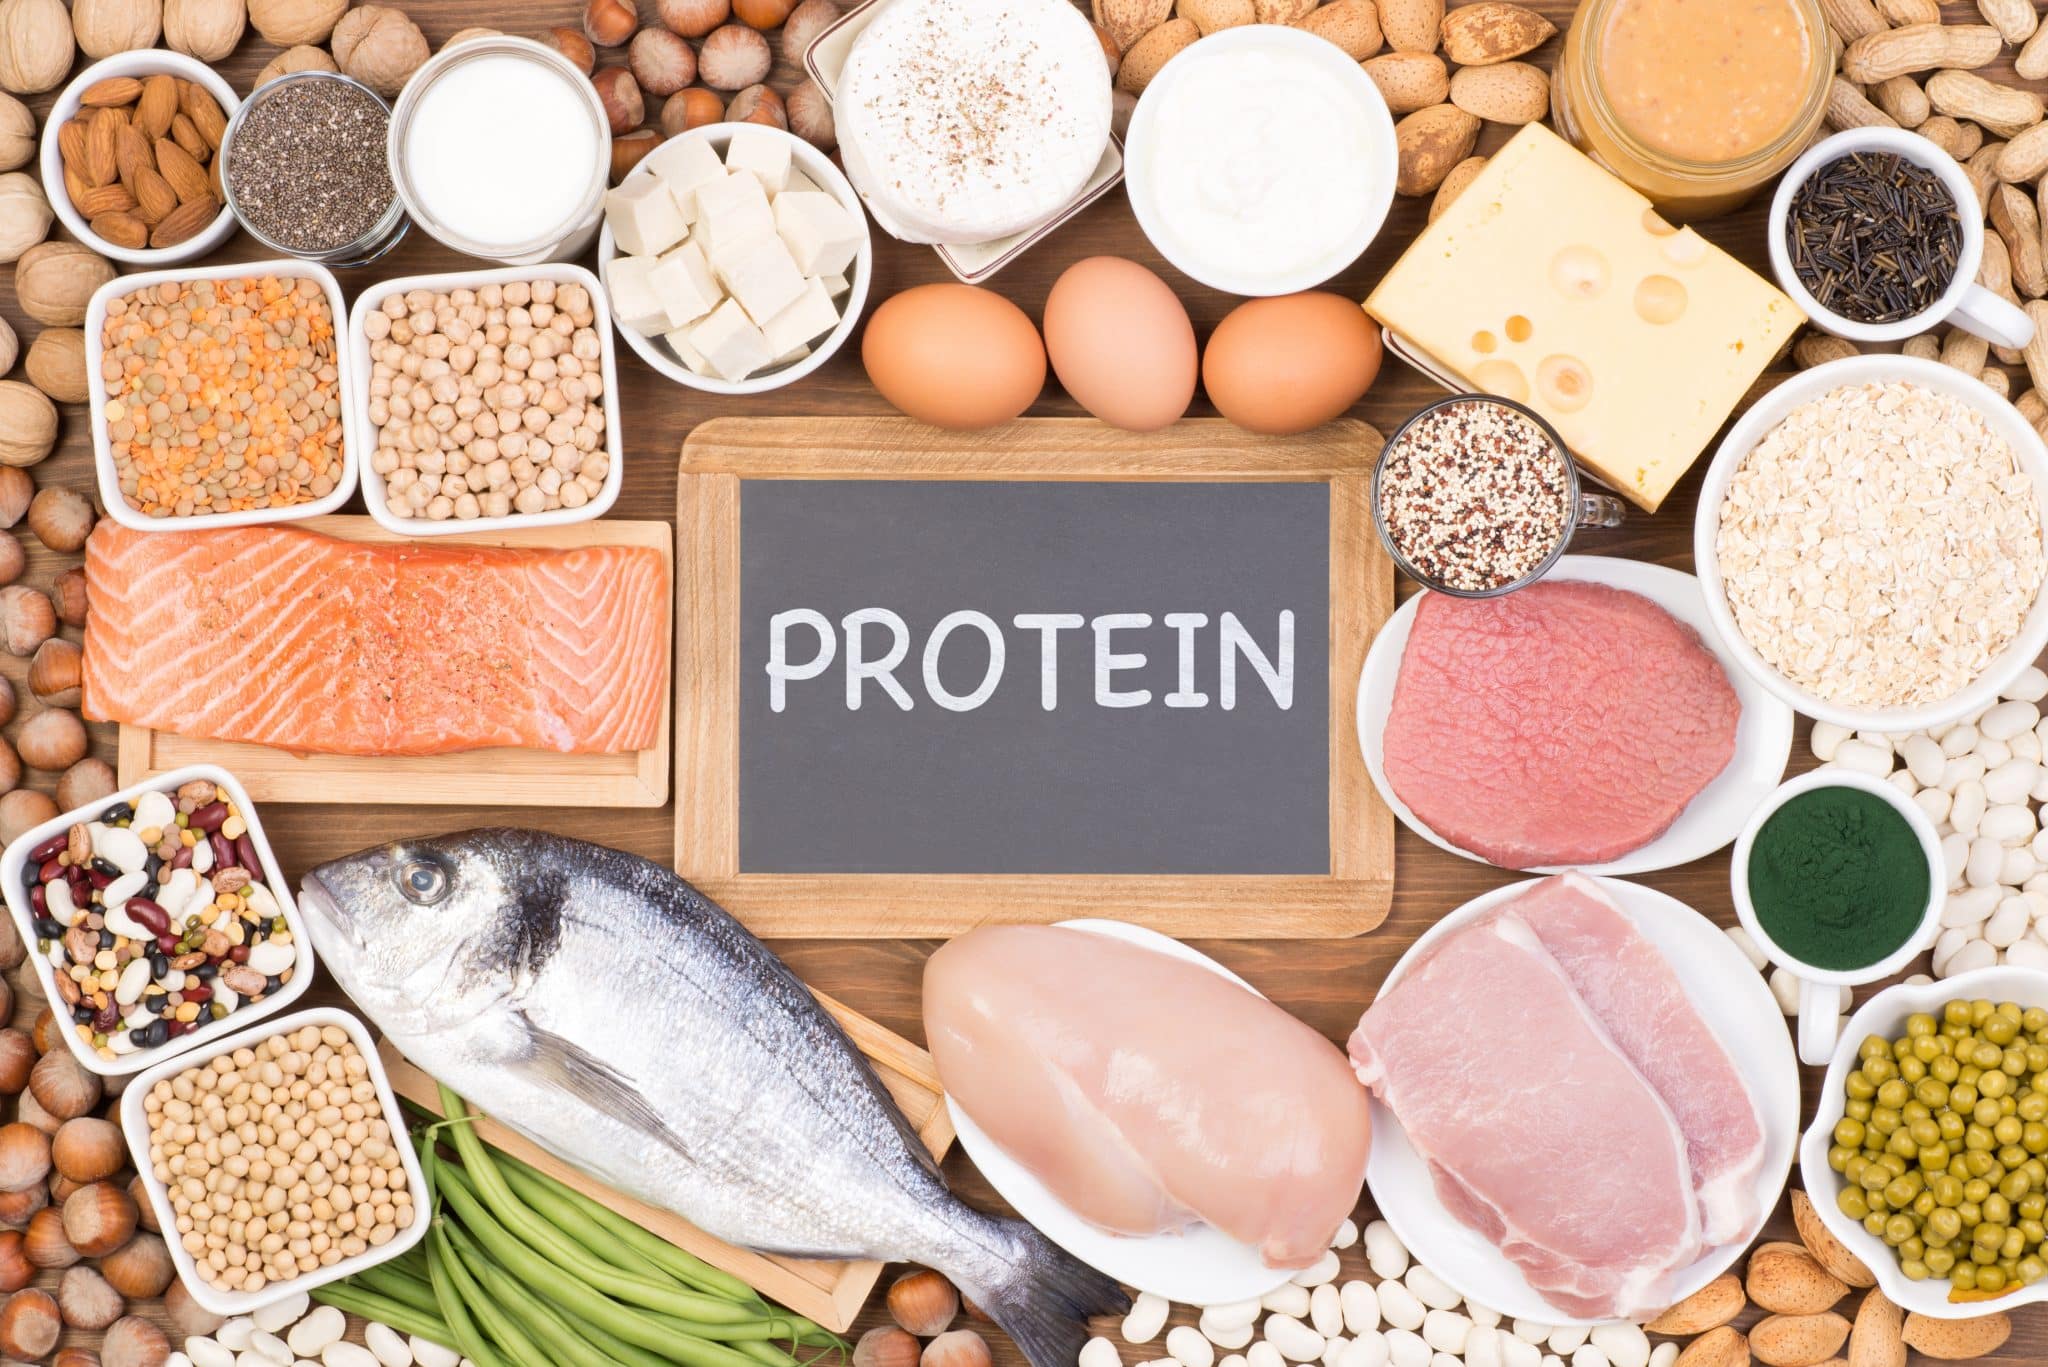 "Protein", steht auf einer Tafel in der Mitte, darum herum proteinhaltige Lebensmittel wie Nüsse, Hülsenfrüchte, Milchprodukte, Fleisch, Fisch oder Haferflocken.